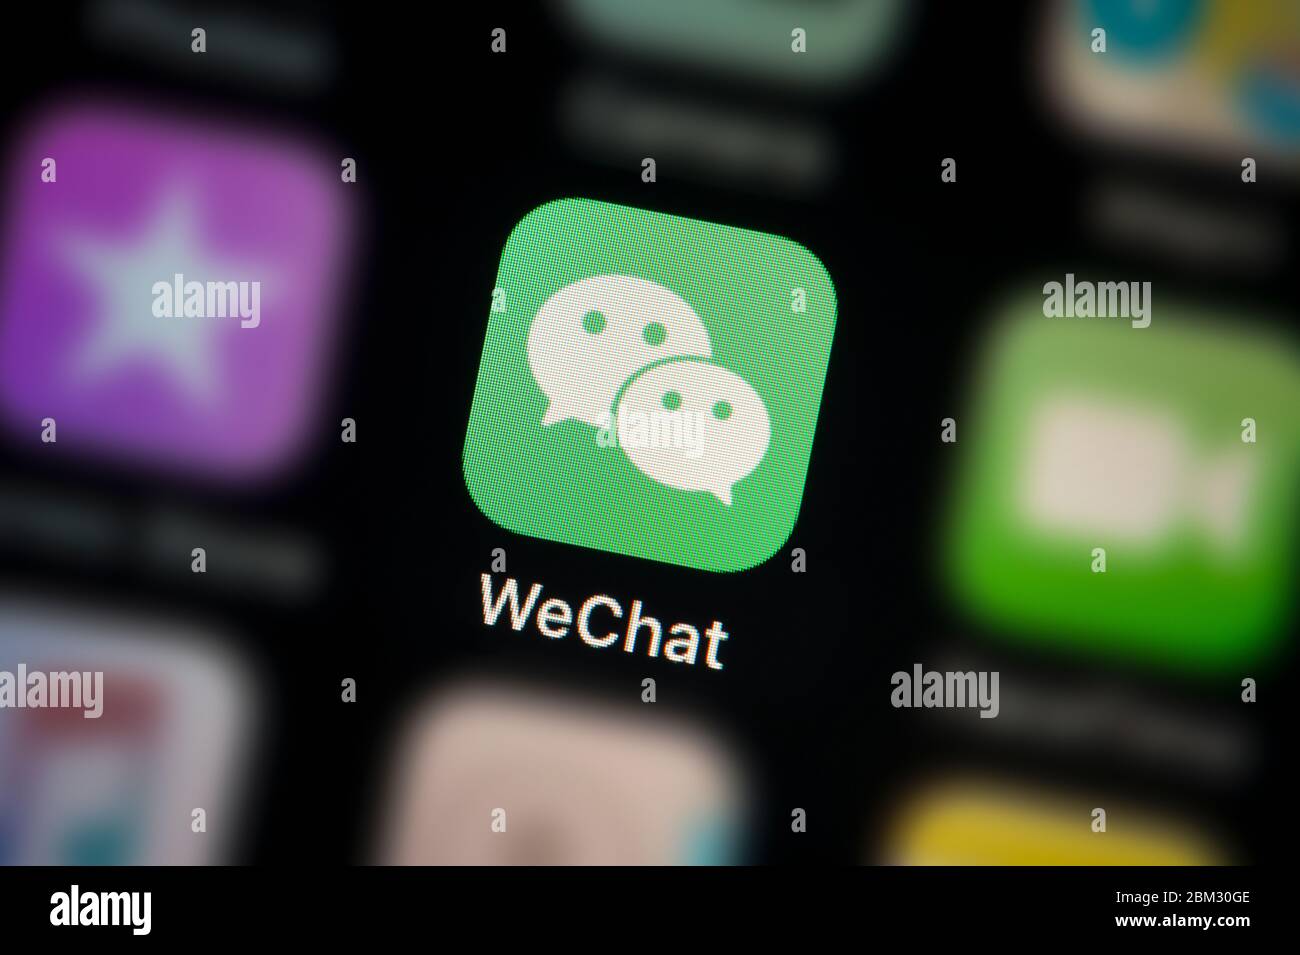 Nahaufnahme des WeChat-App-Symbols, wie auf dem Bildschirm eines Smartphones zu sehen (nur für redaktionelle Verwendung) Stockfoto